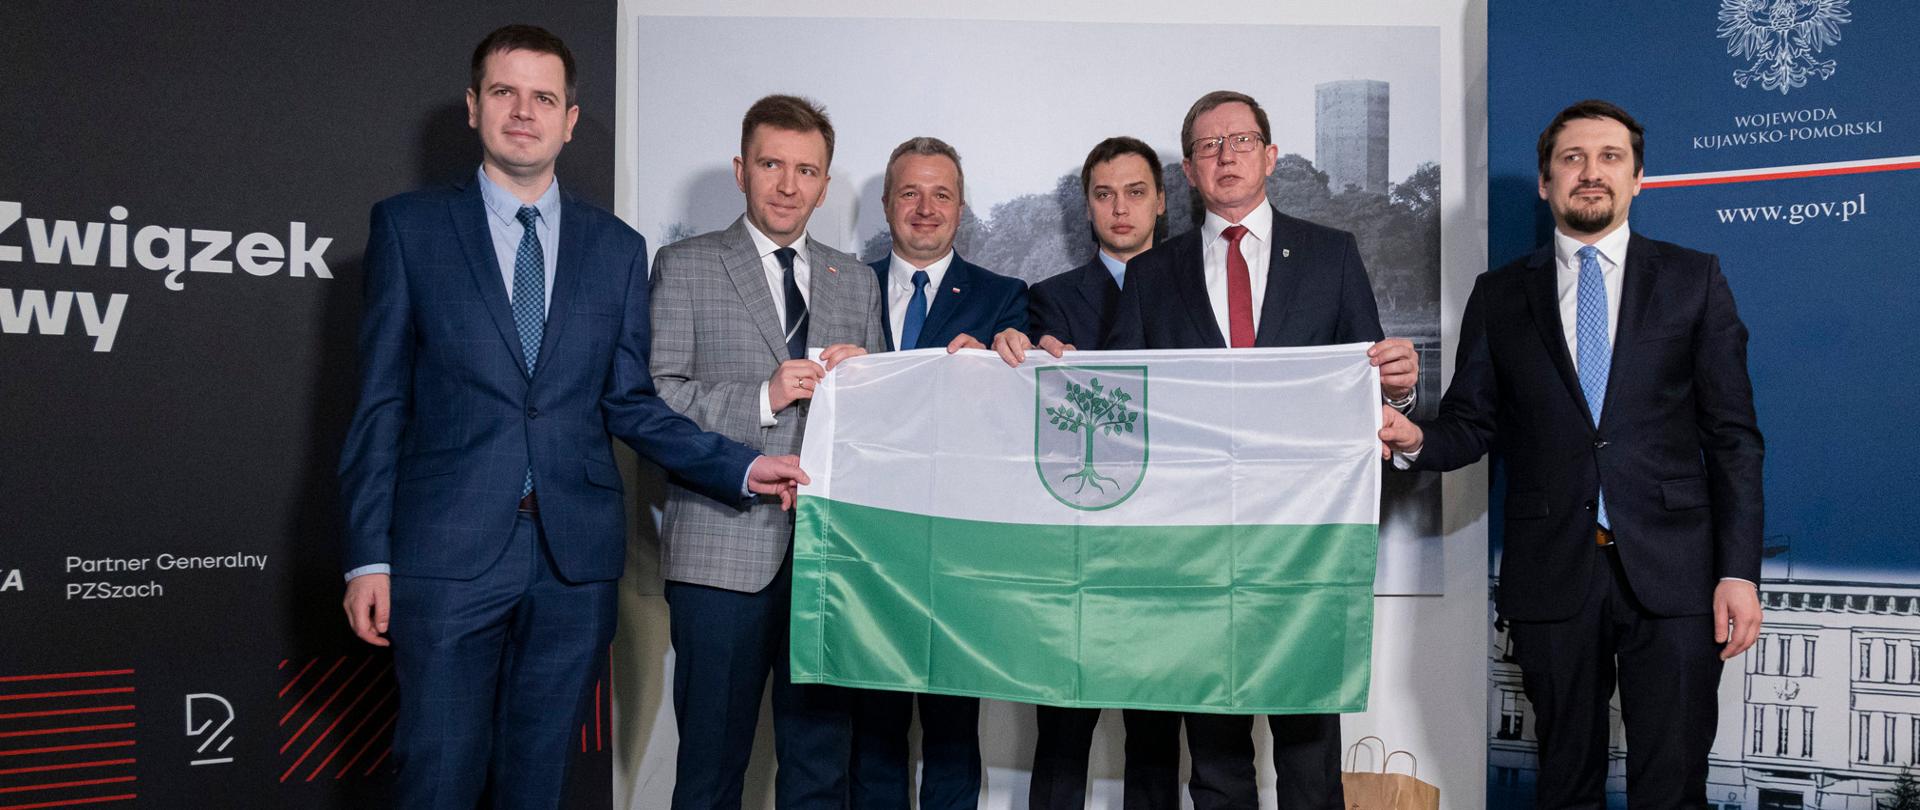 Sześciu mężczyzn trzymających flagę Kruszwicy